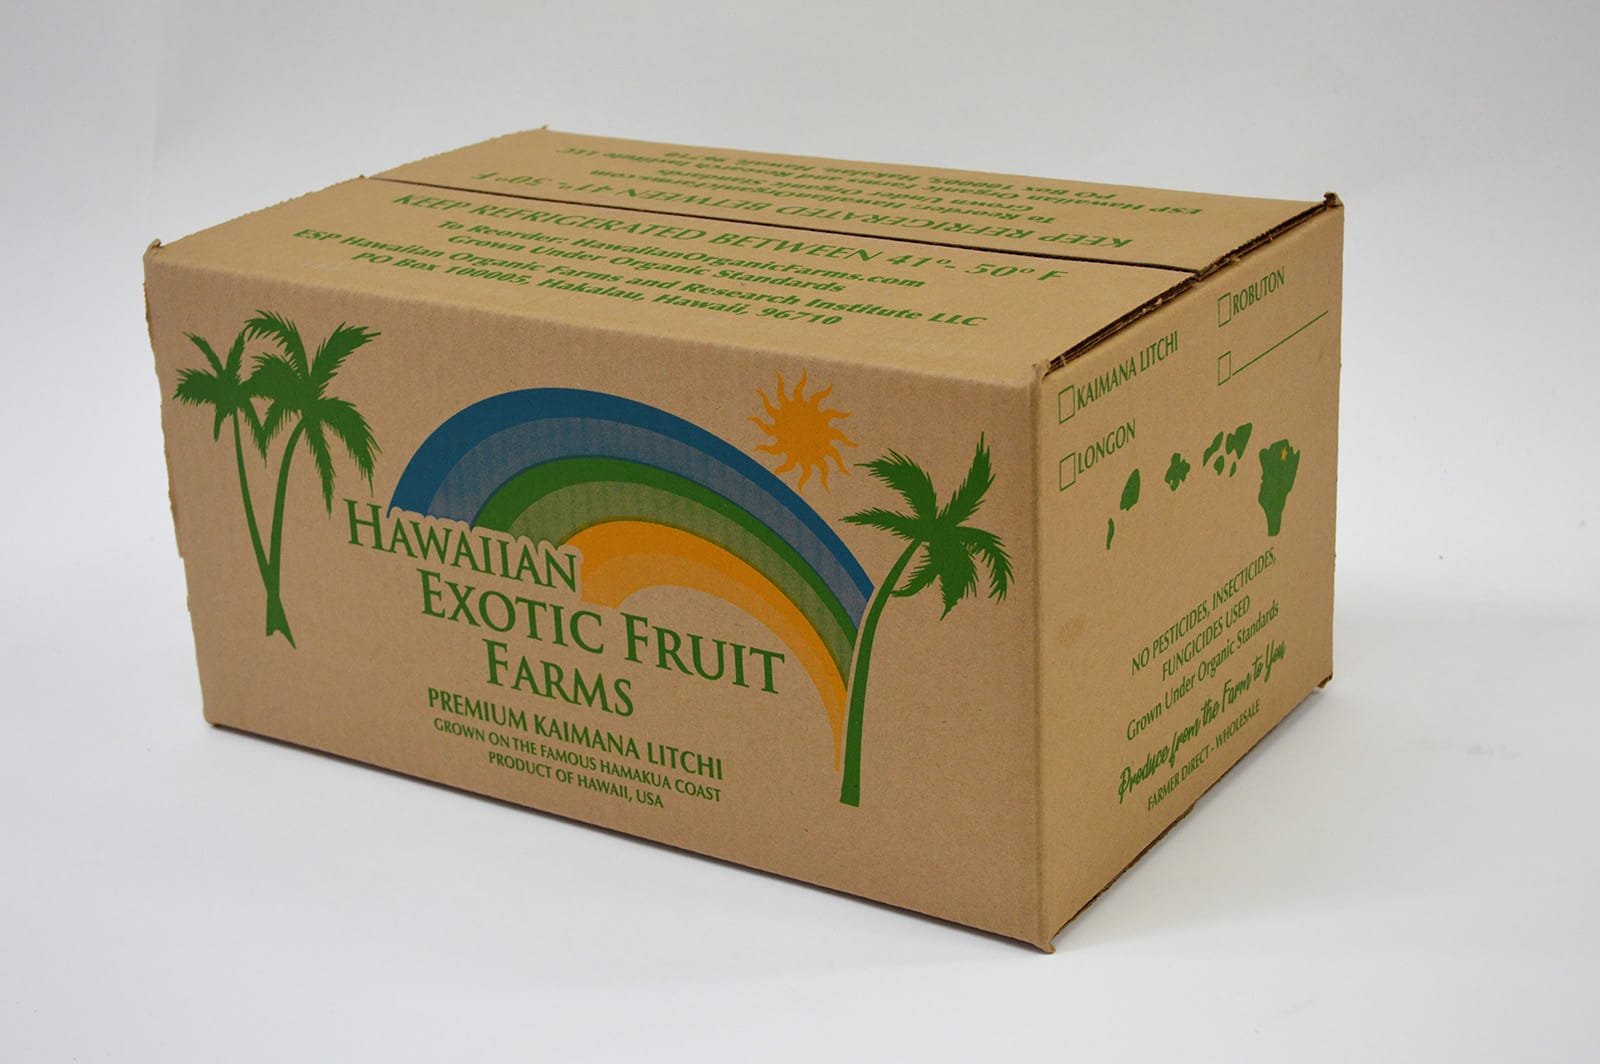 Fruit - Hawaiian Exotic Fruit Farms